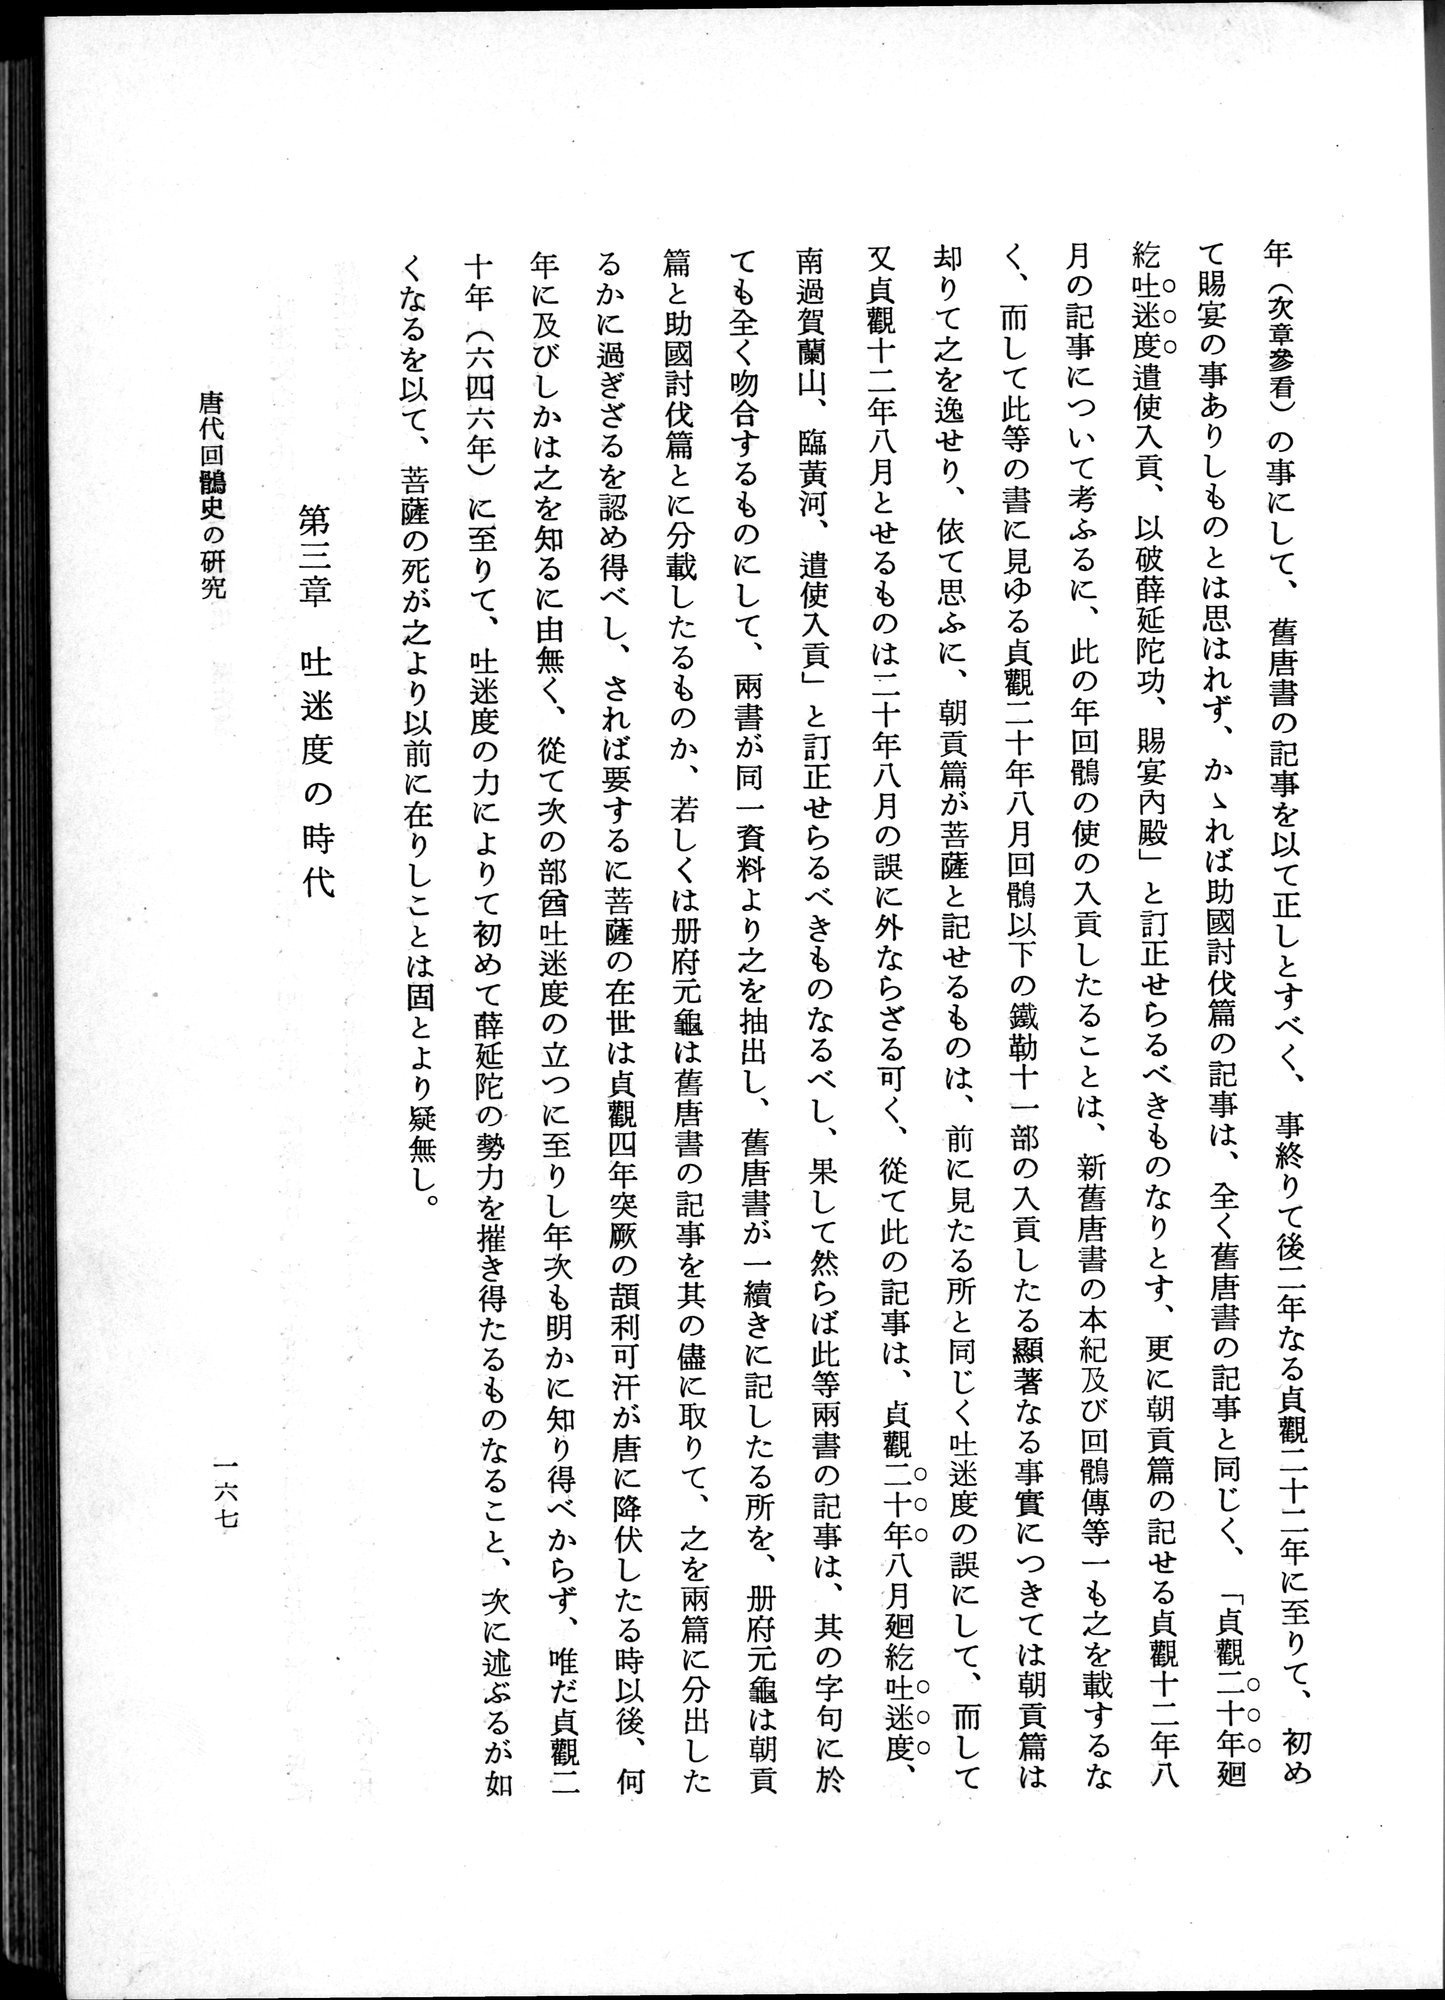 羽田博士史学論文集 : vol.1 / Page 205 (Grayscale High Resolution Image)